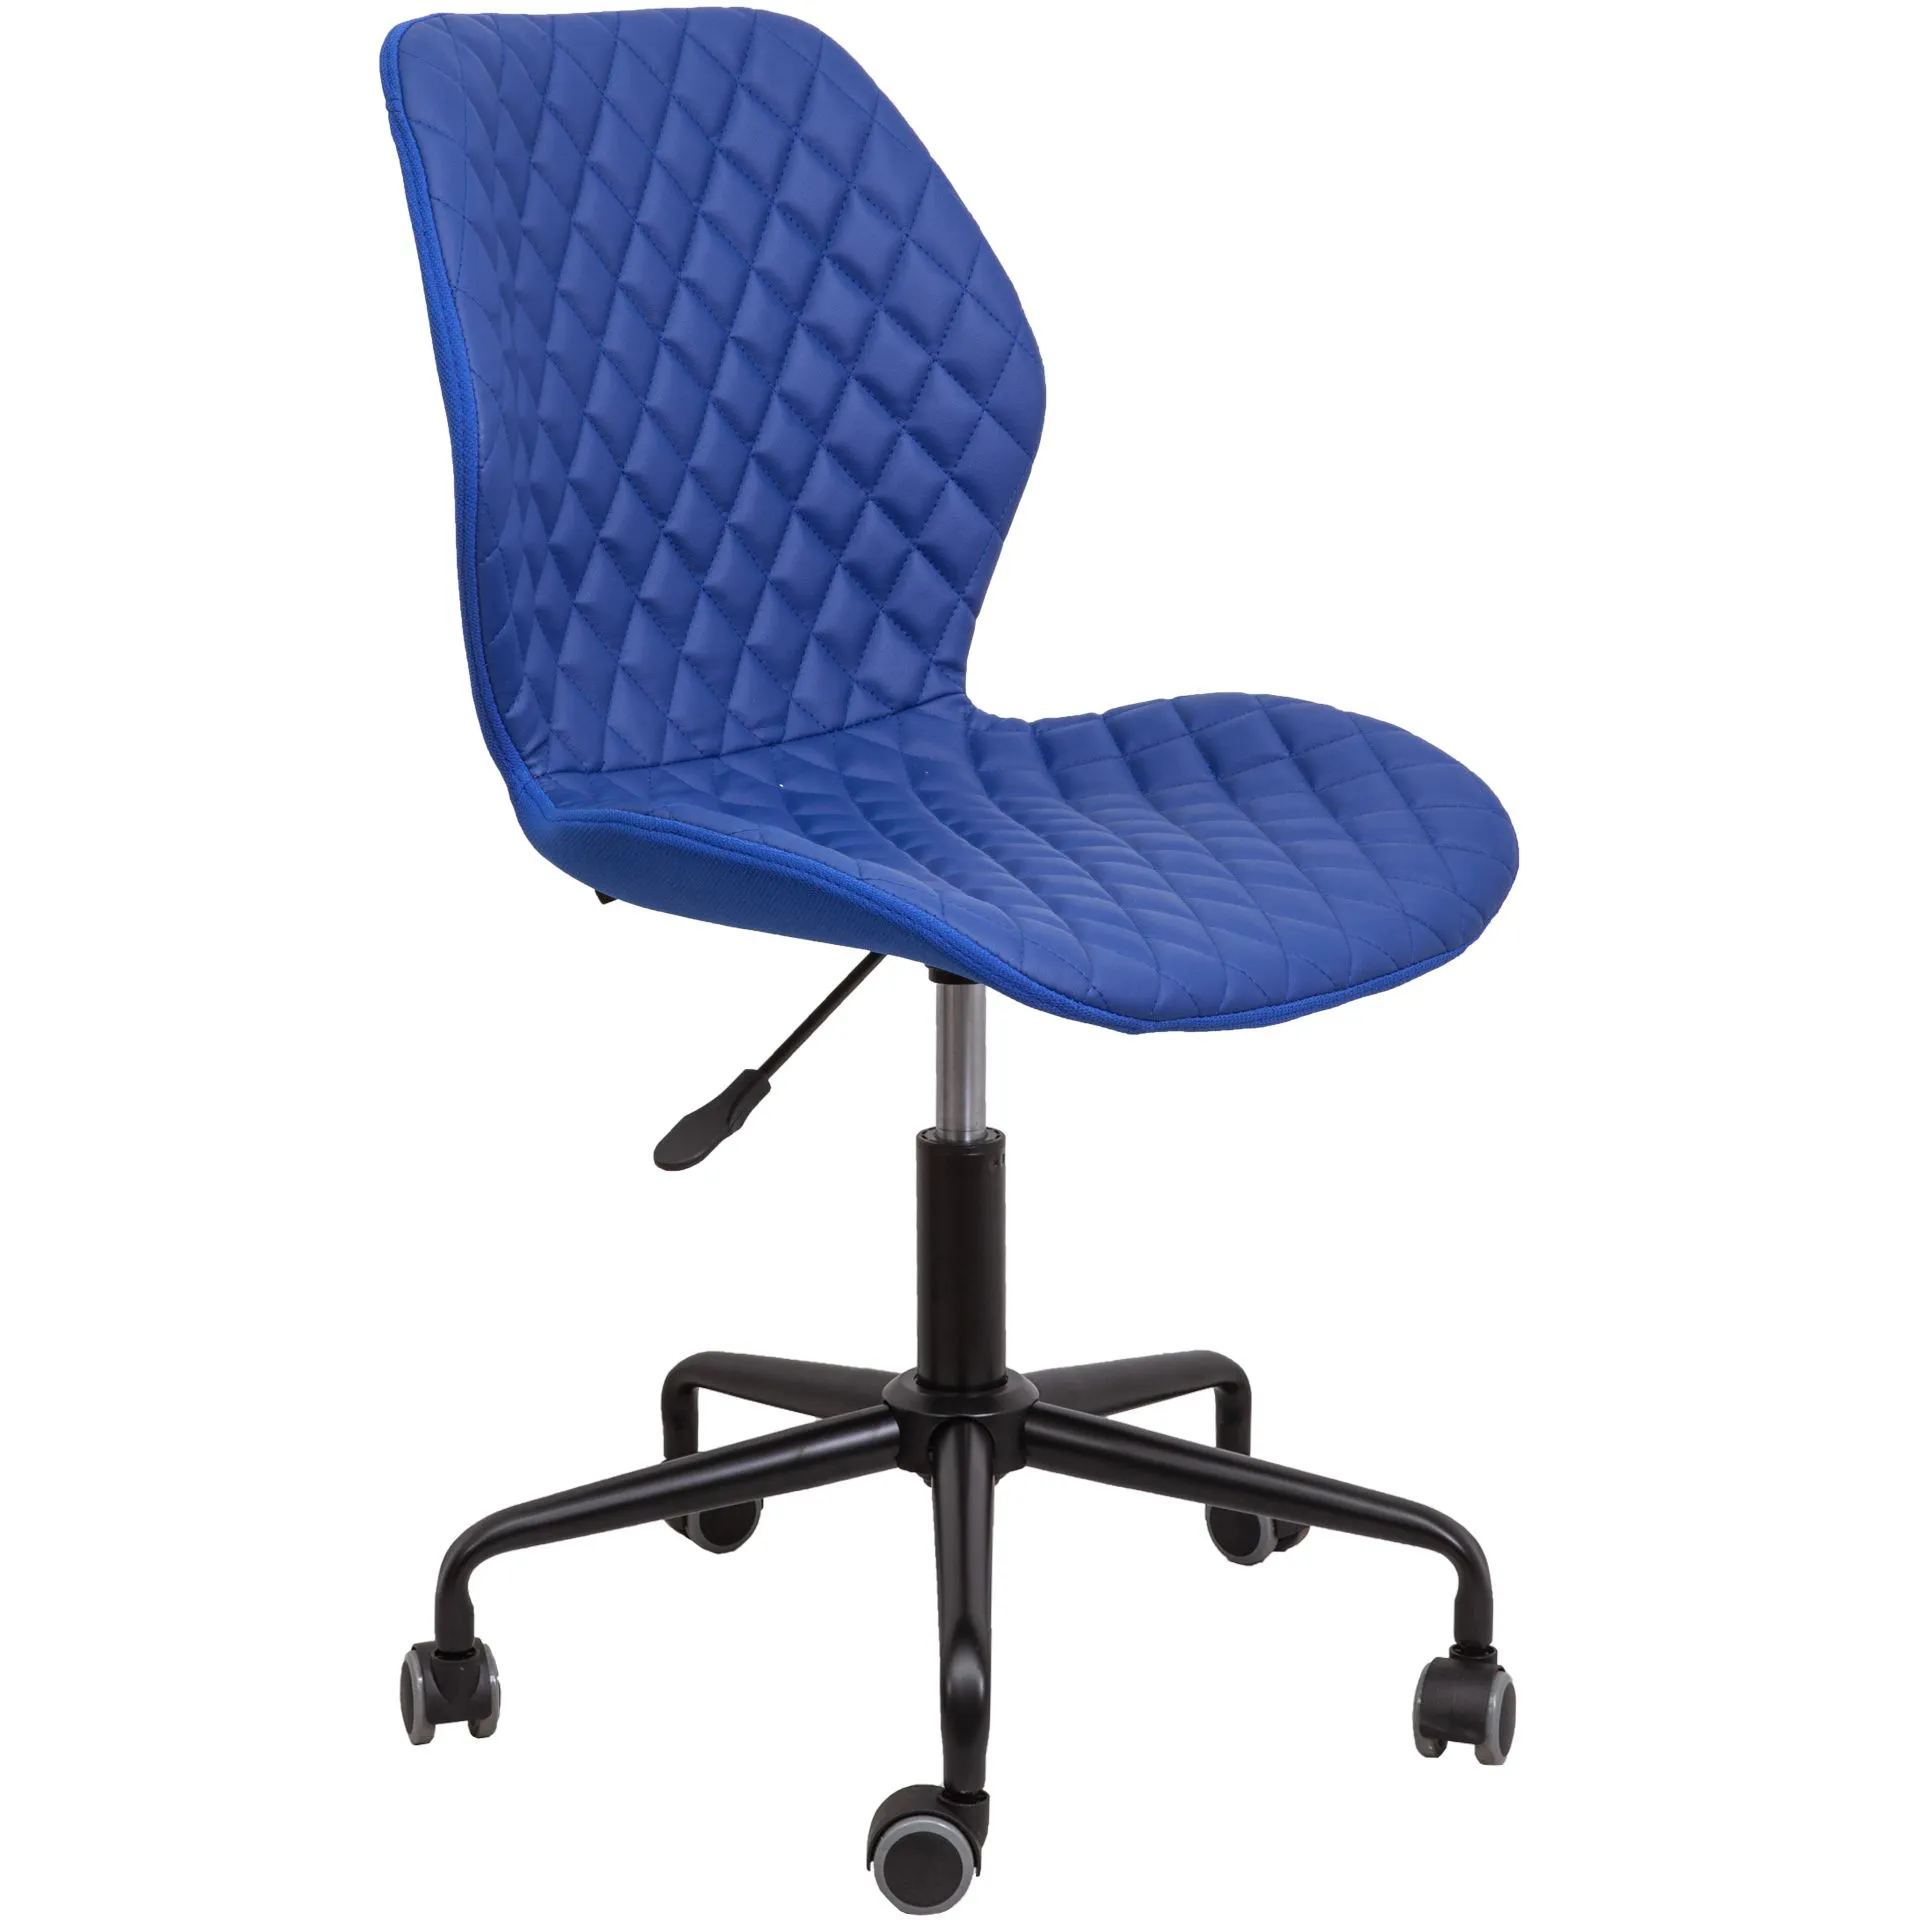 Кресло офисное DELFIN 69734 синий